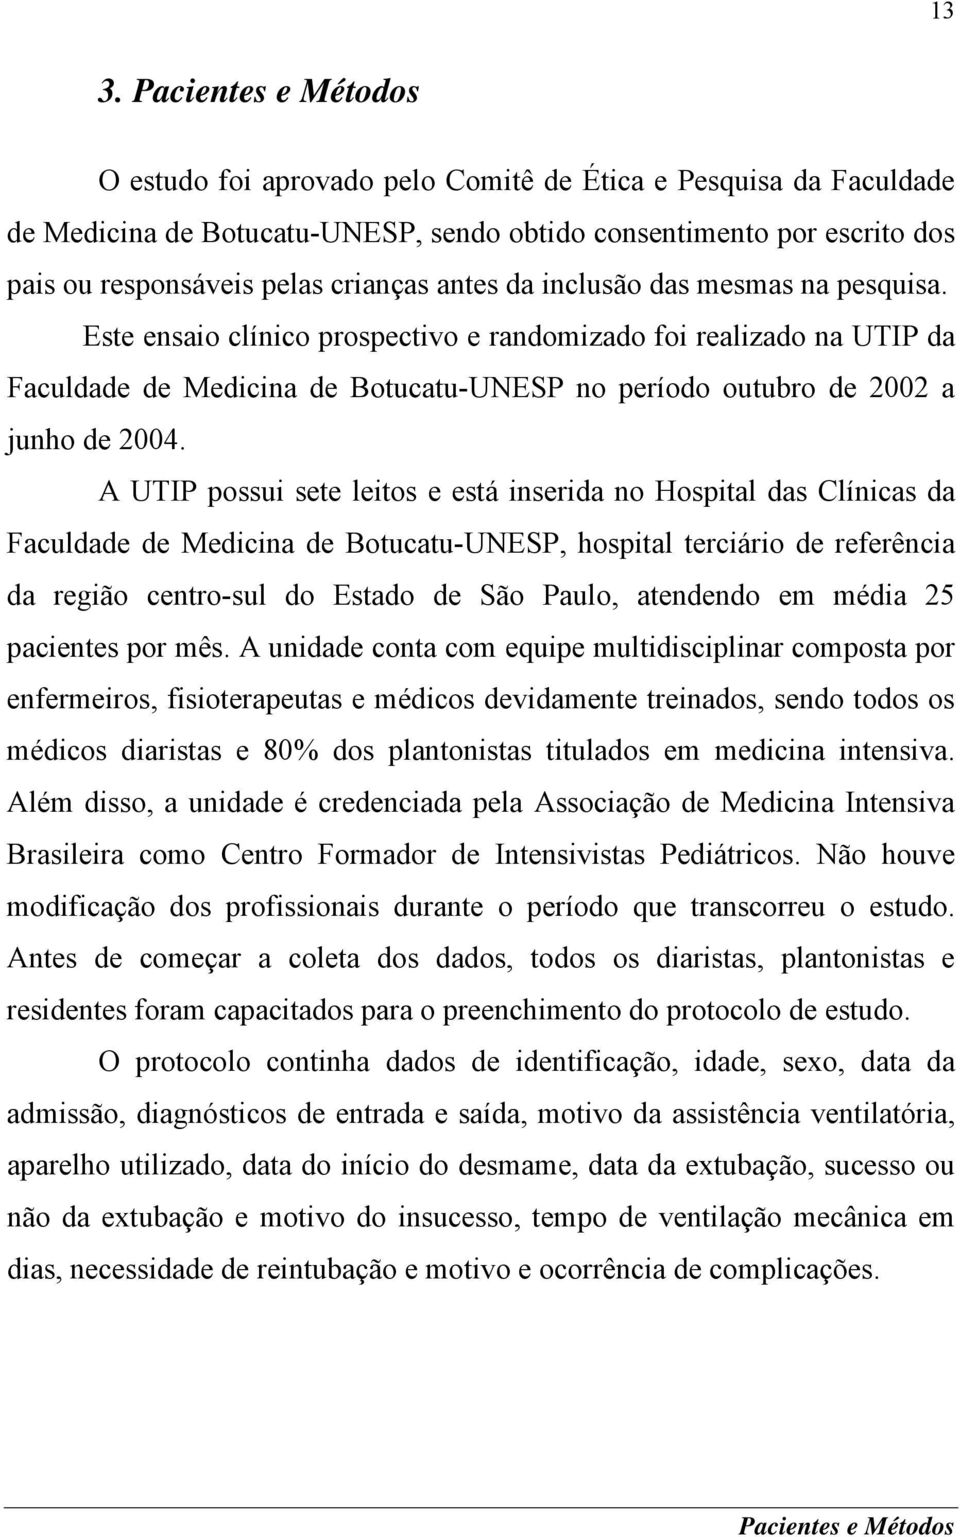 Este ensaio clínico prospectivo e randomizado foi realizado na UTIP da Faculdade de Medicina de Botucatu-UNESP no período outubro de 2002 a junho de 2004.